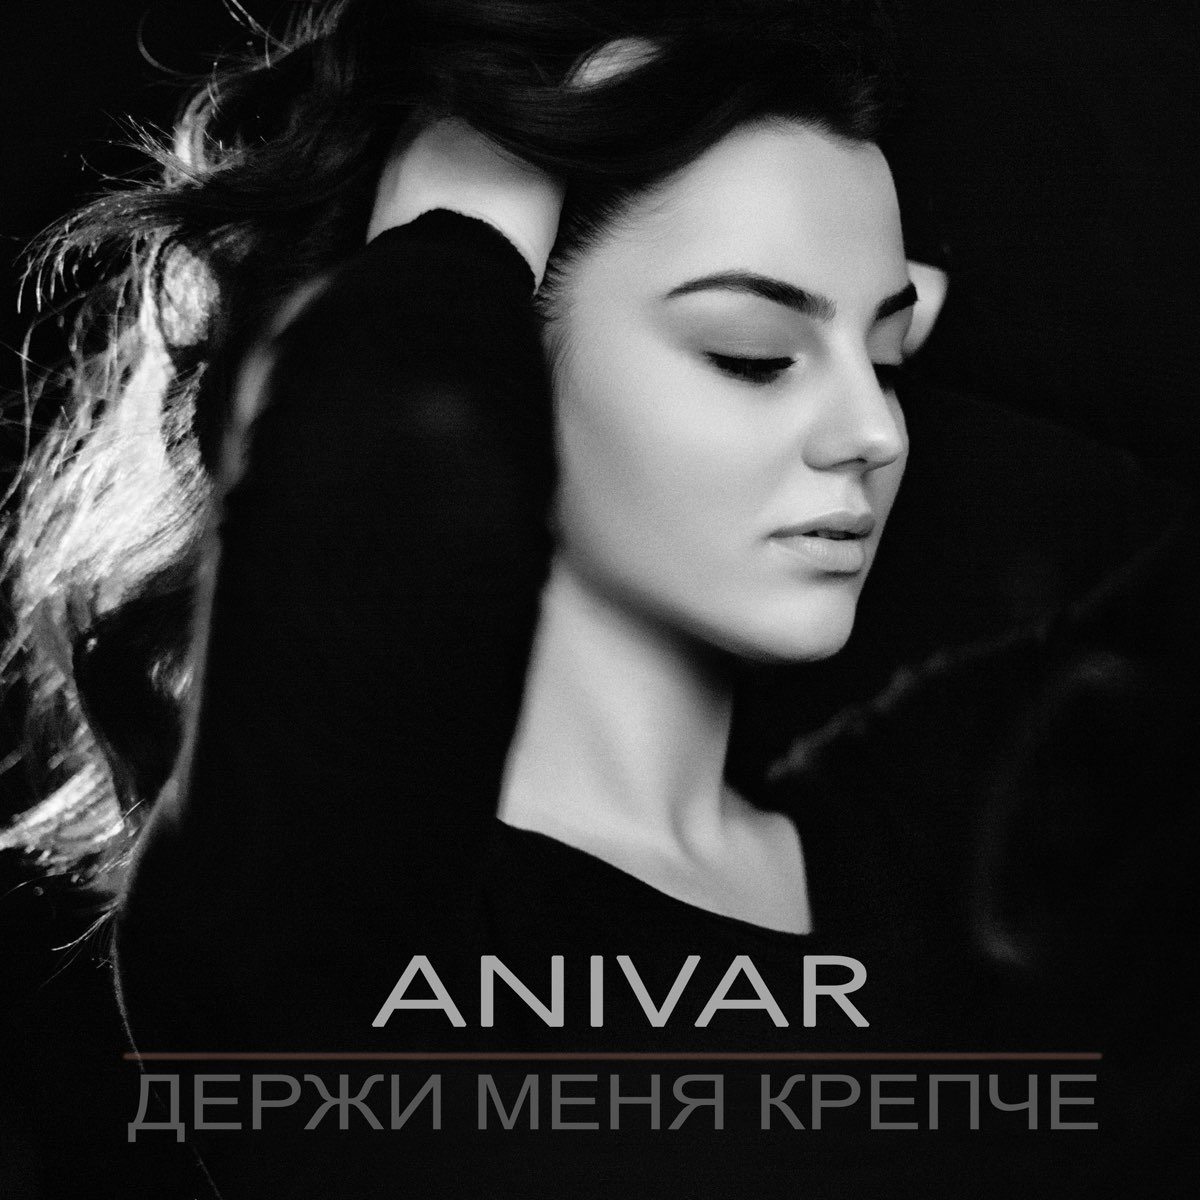 Альбом "Держи меня крепче - Single" (ANIVAR) в Apple Music.